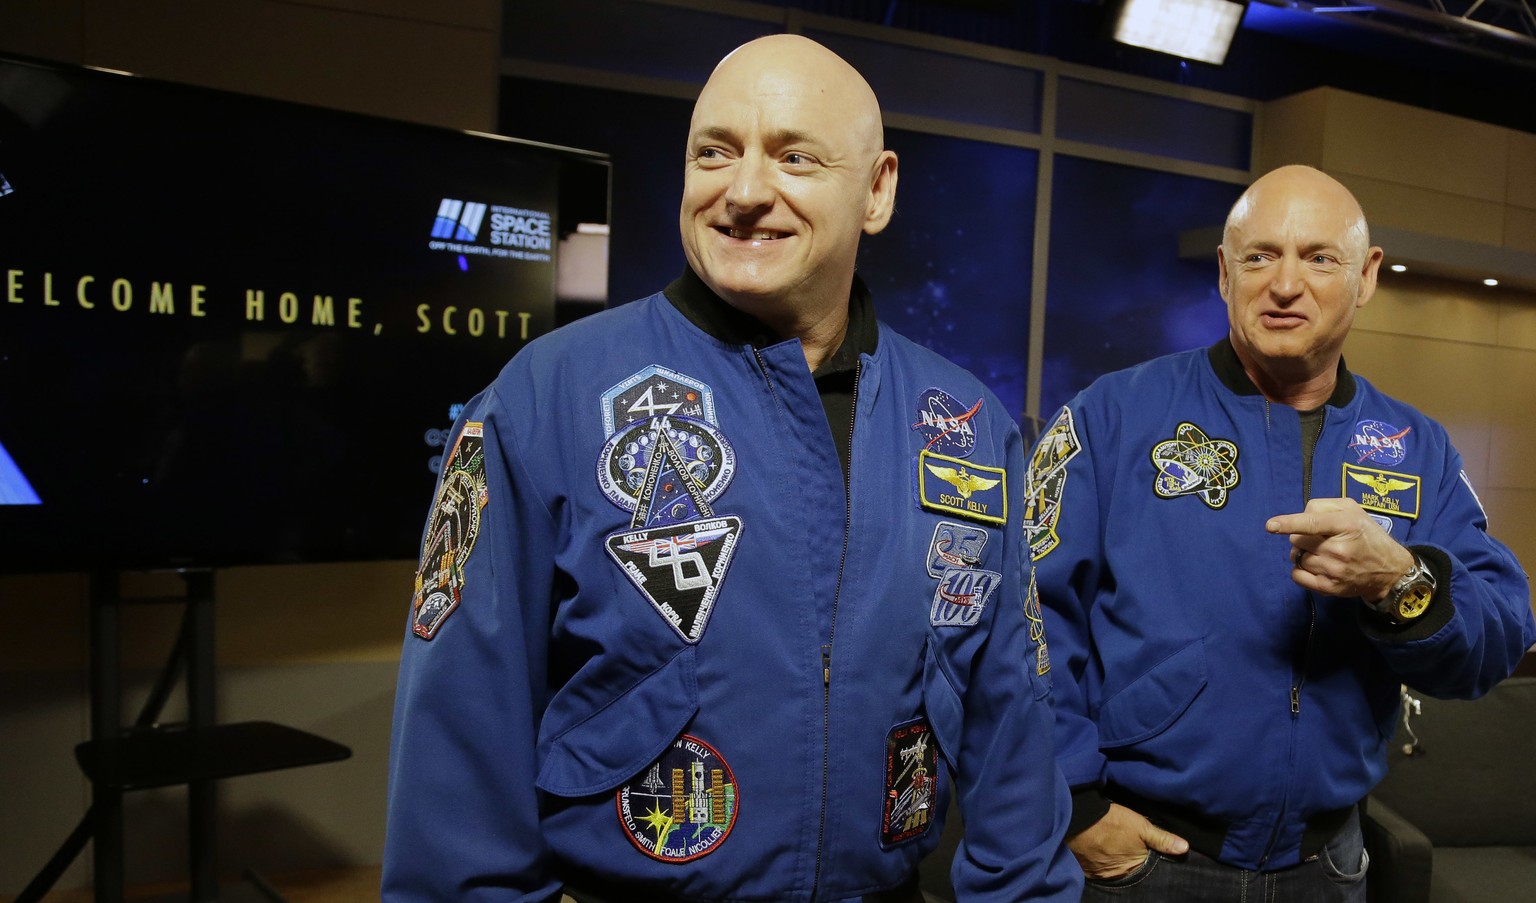 Das gab es noch nie: Eineiige Astronauten. Scott (l.) und Mark Kelly waren beide schon im All. Für die Zwillingsstudie blieb Mark auf der Erde, während Scott auf der ISS war. 